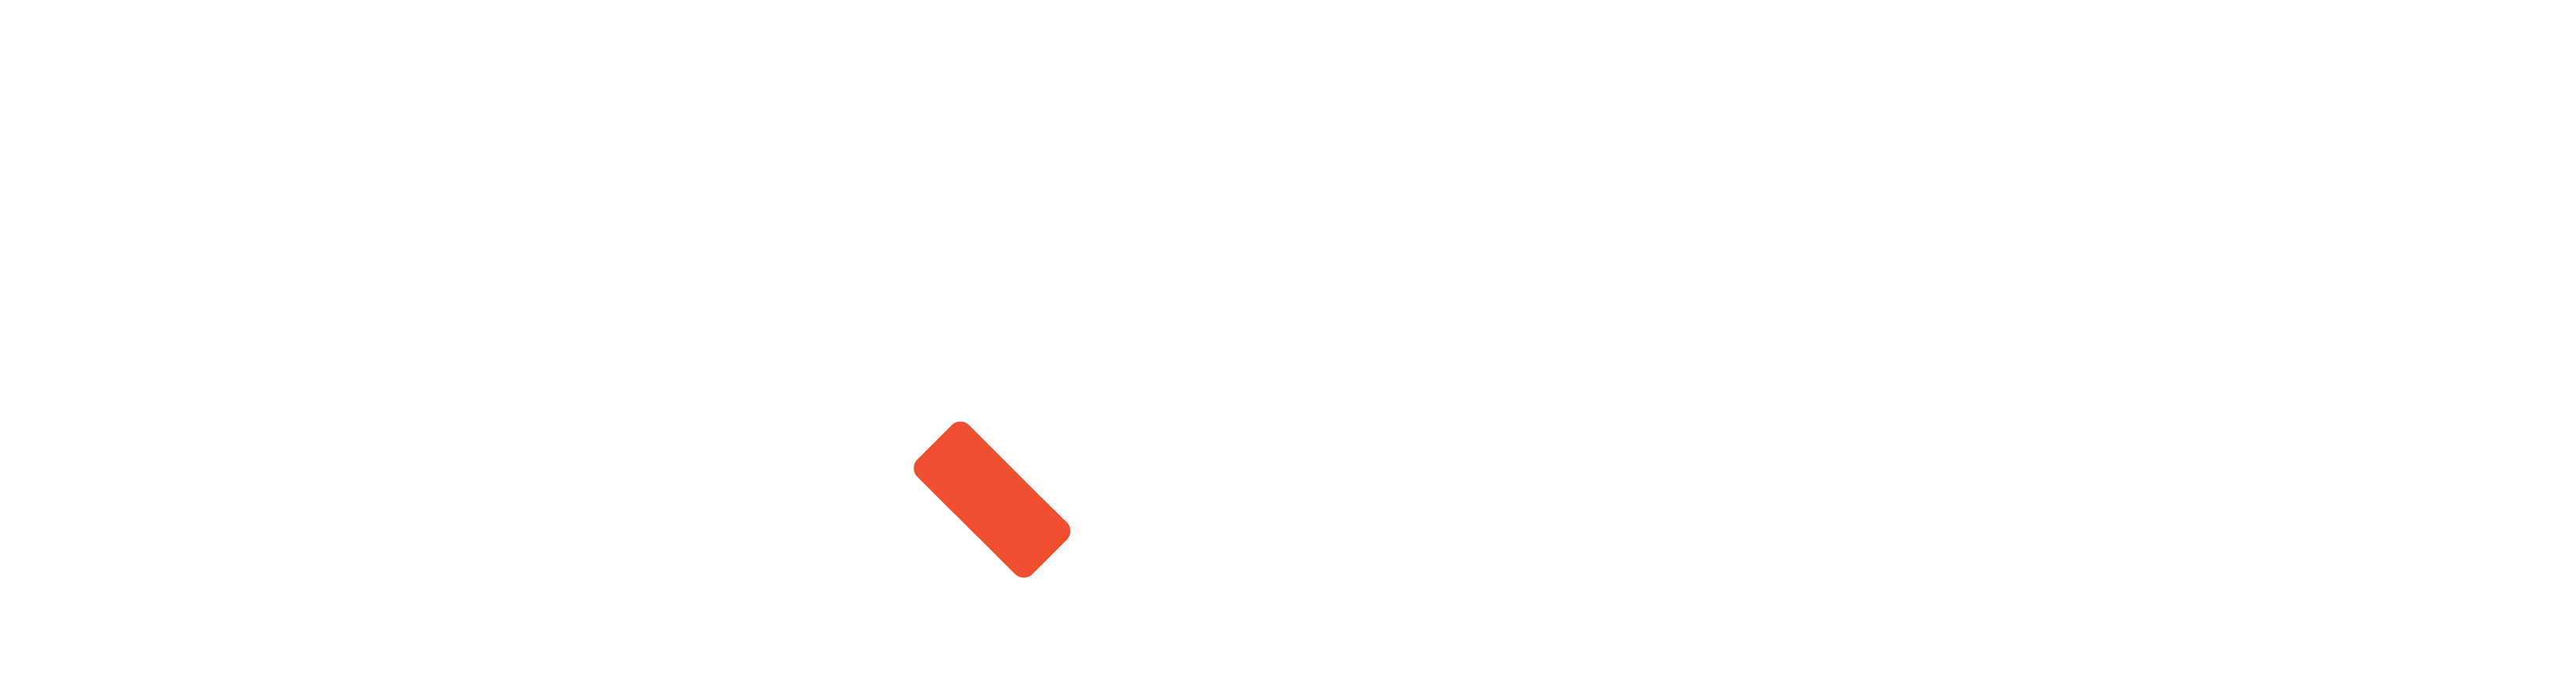 UQ Master Channels